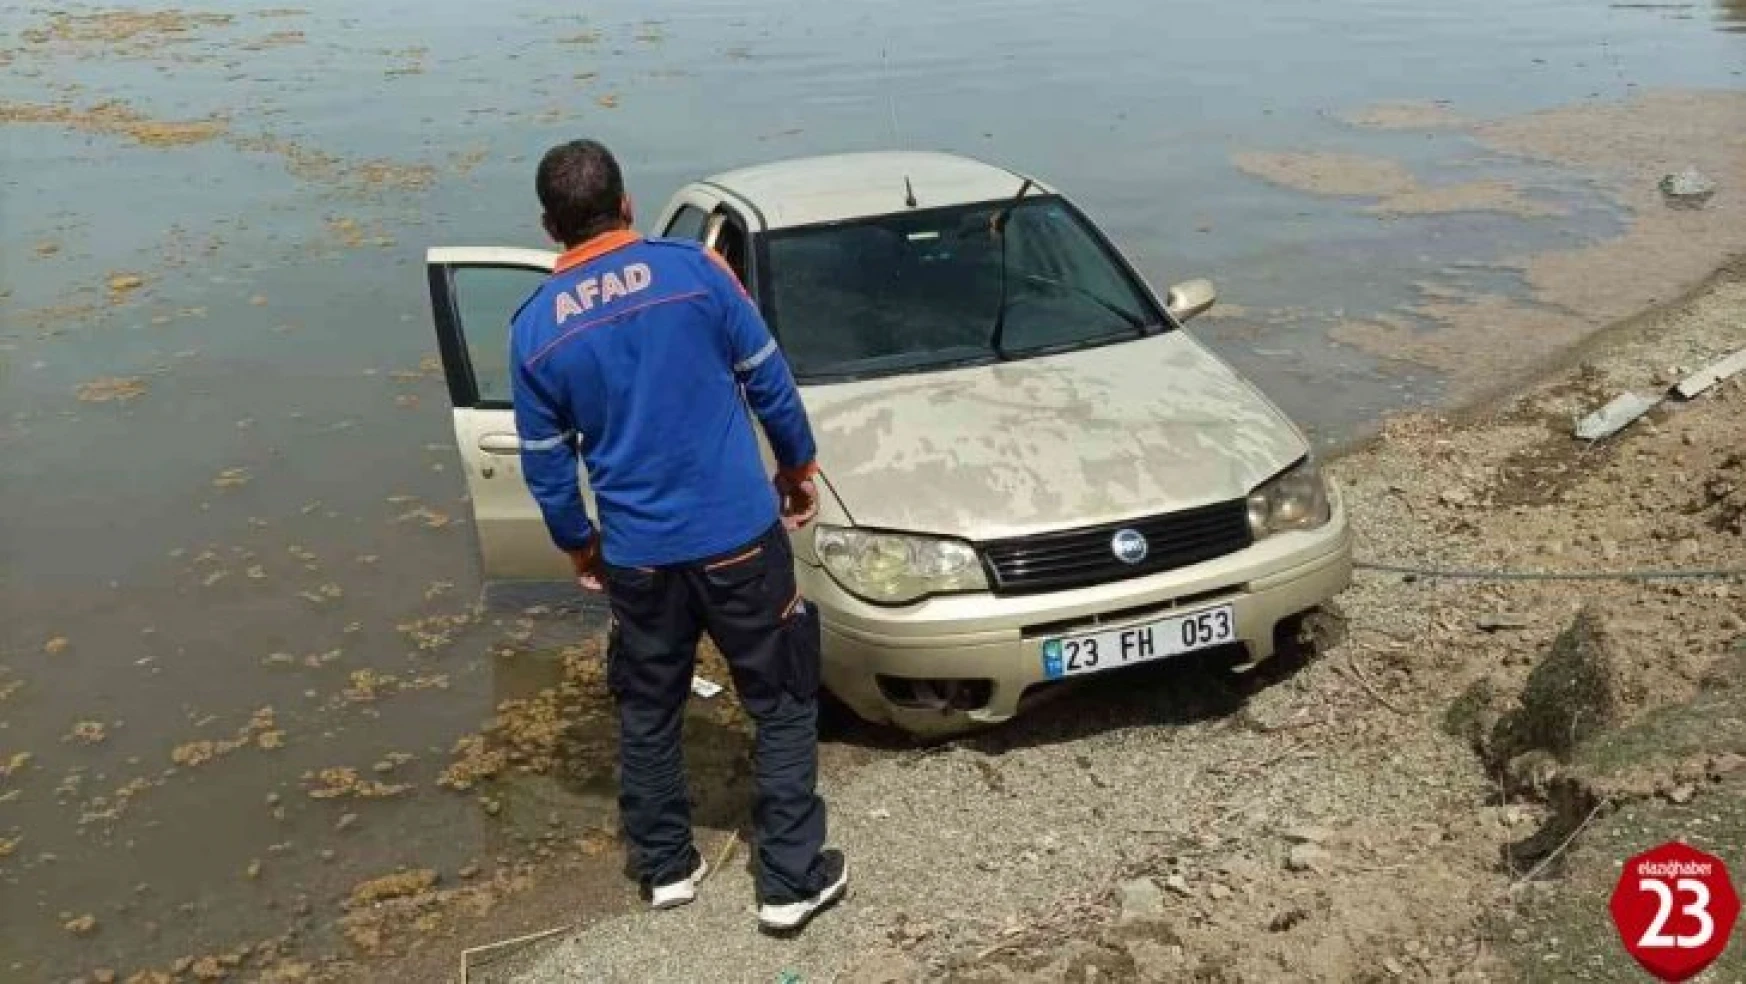 Elazığ'da otomobil göle uçtu, sürücü kendi imkanlarıyla araçtan çıkarak kıyıya yüzdü